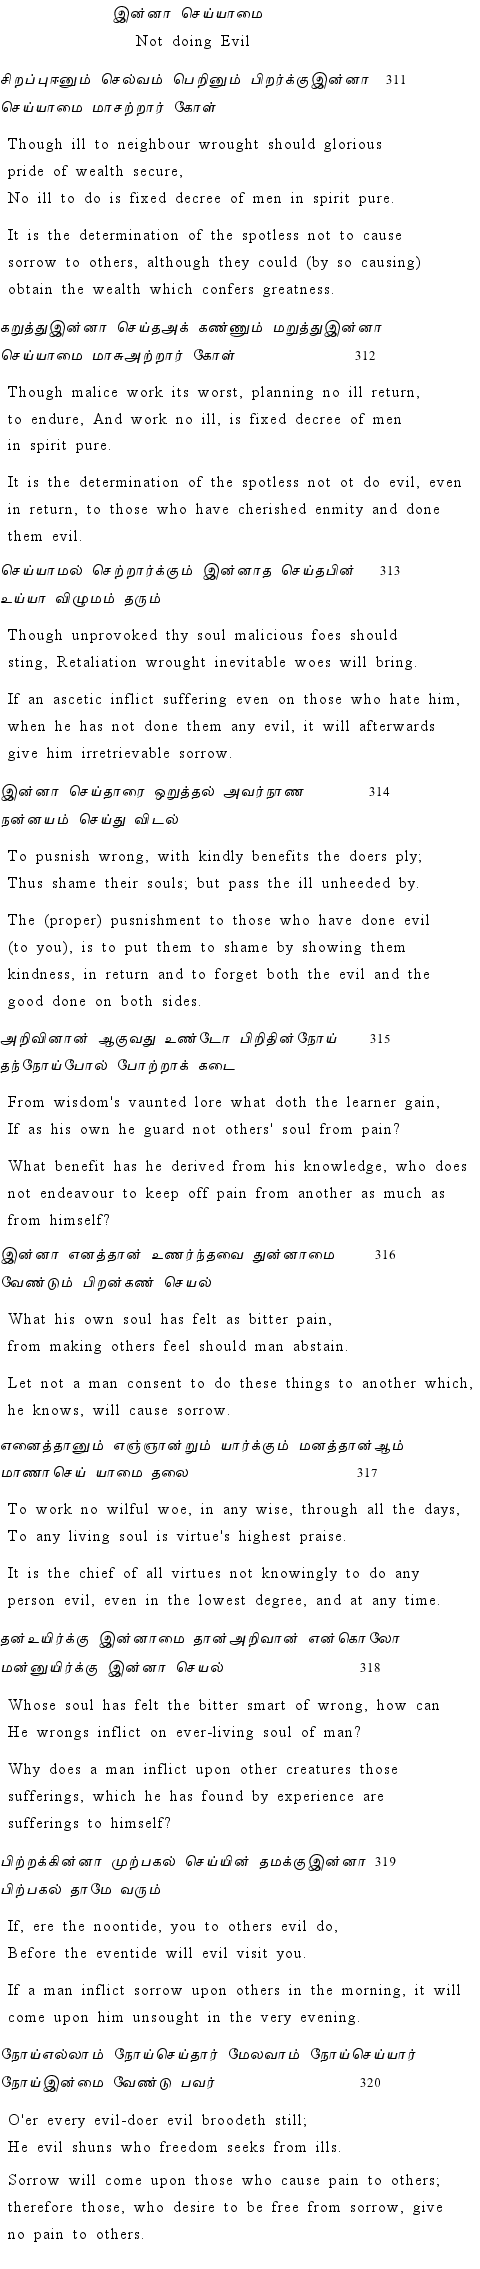 Text of Adhikaram 32